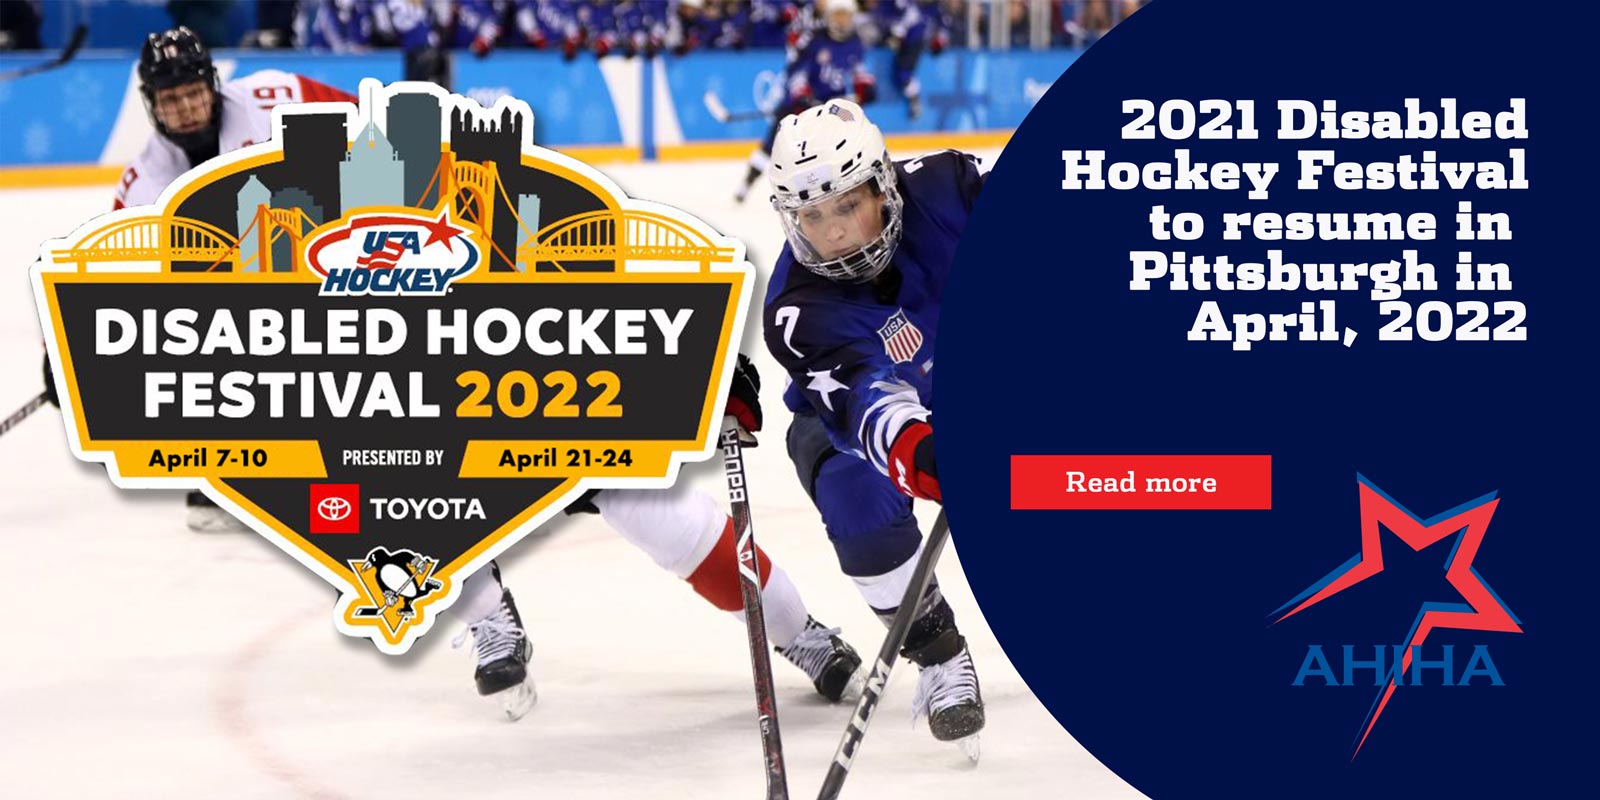 Disabled Hockey Festival set for 2022